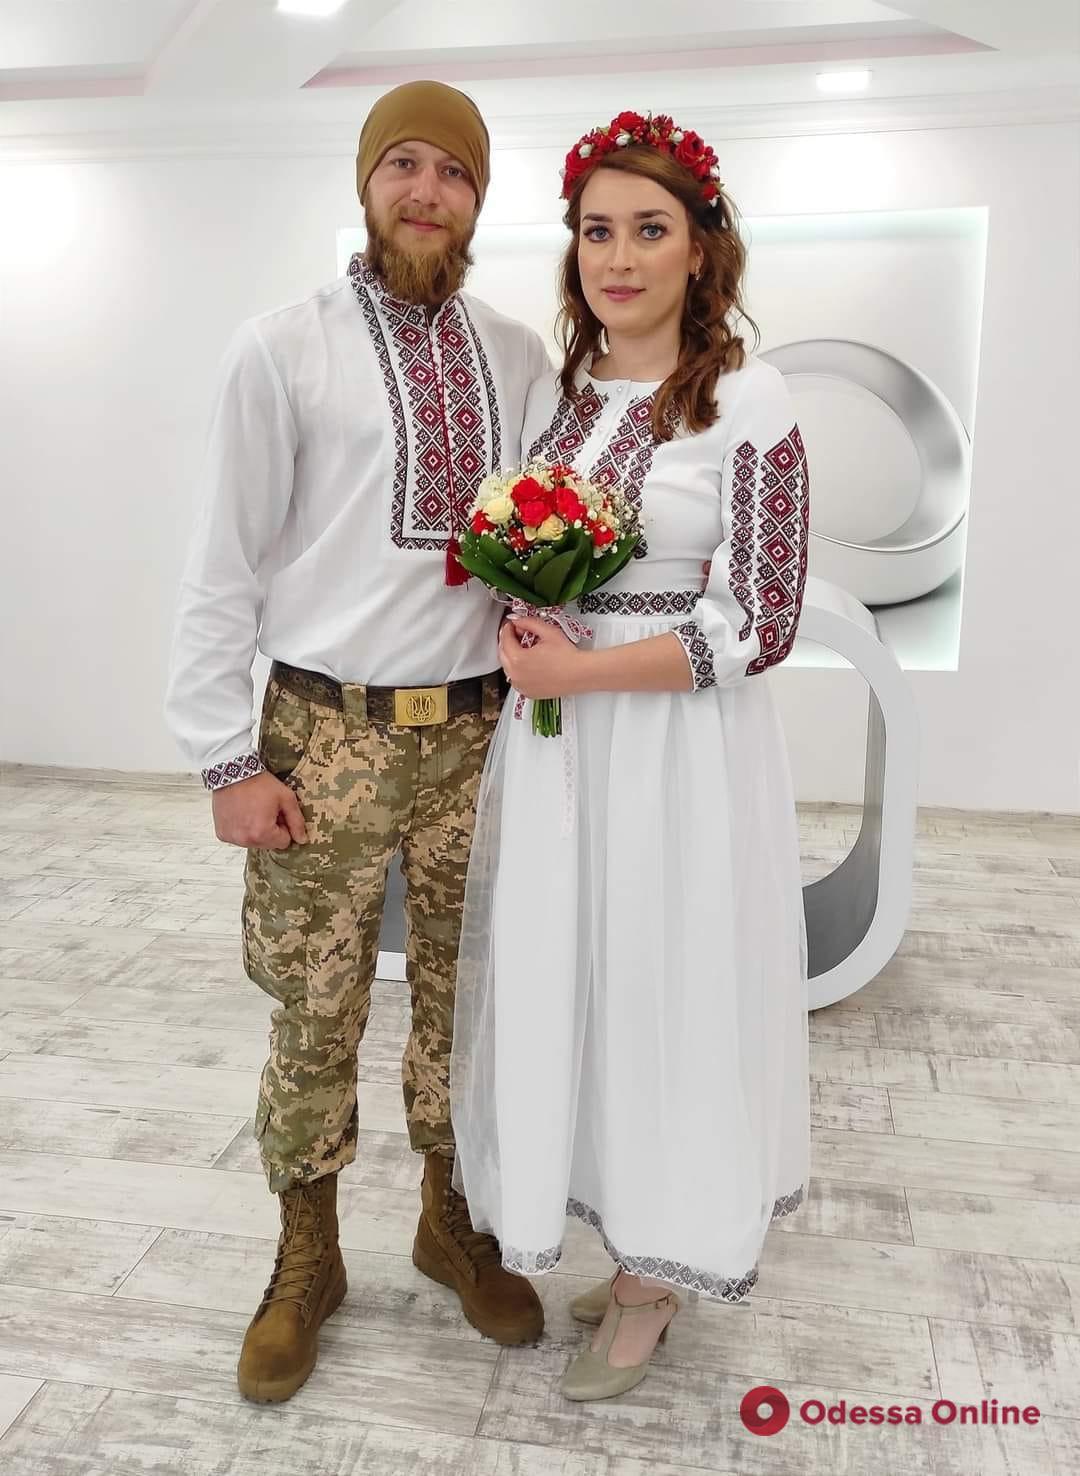 Одесская область заняла третье место по количеству заключенных браков с начала года